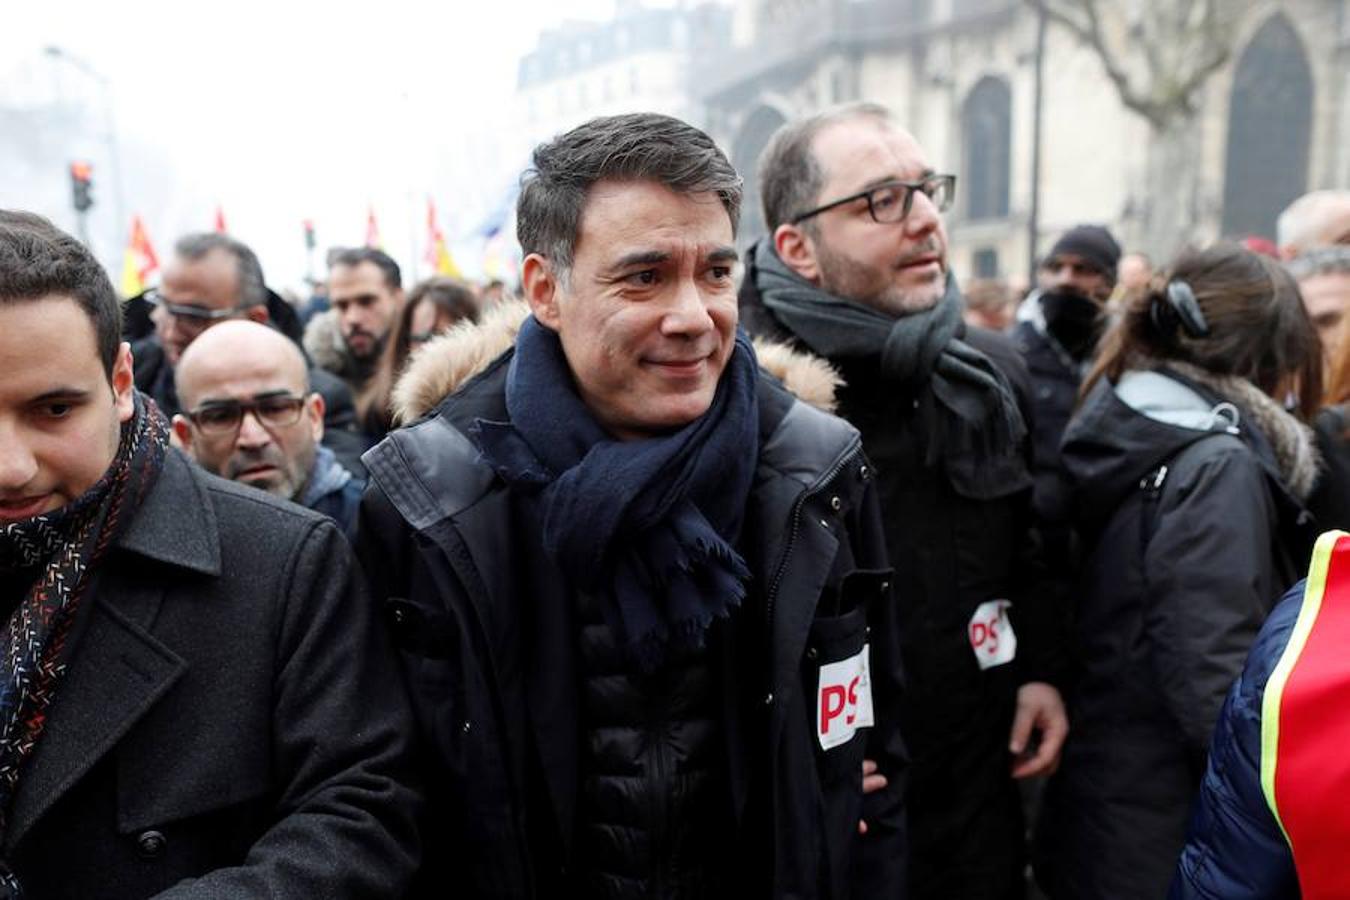 Huelga contra la política económica de Macron, en imágenes. Olivier Faure, secretario general del Partido Socialista Francés (PS) en la principal manifestación en París